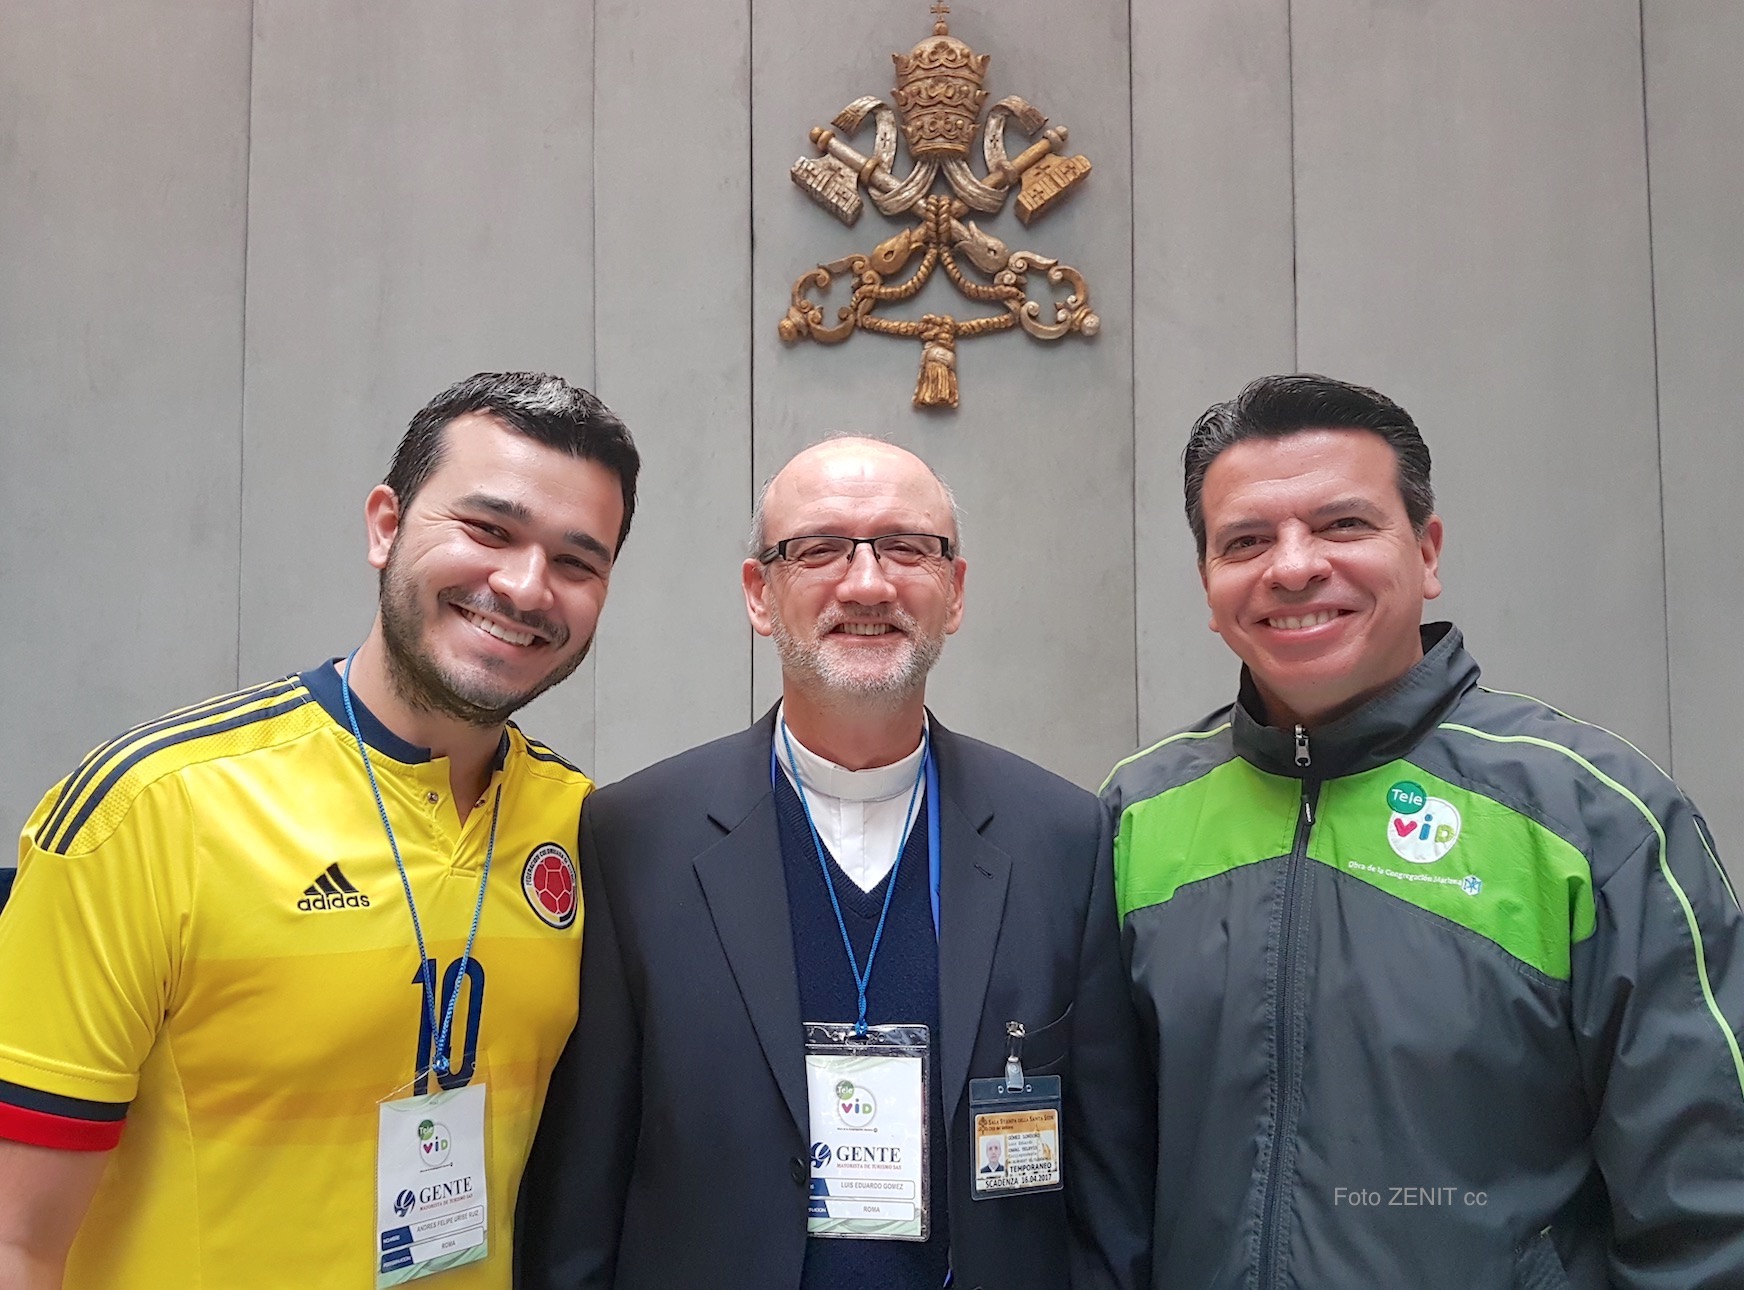 Delegación de Televid, el padre Luis Gomez, el productor Cesar Giraldo, y el joven Andrés Uribe Ruiz